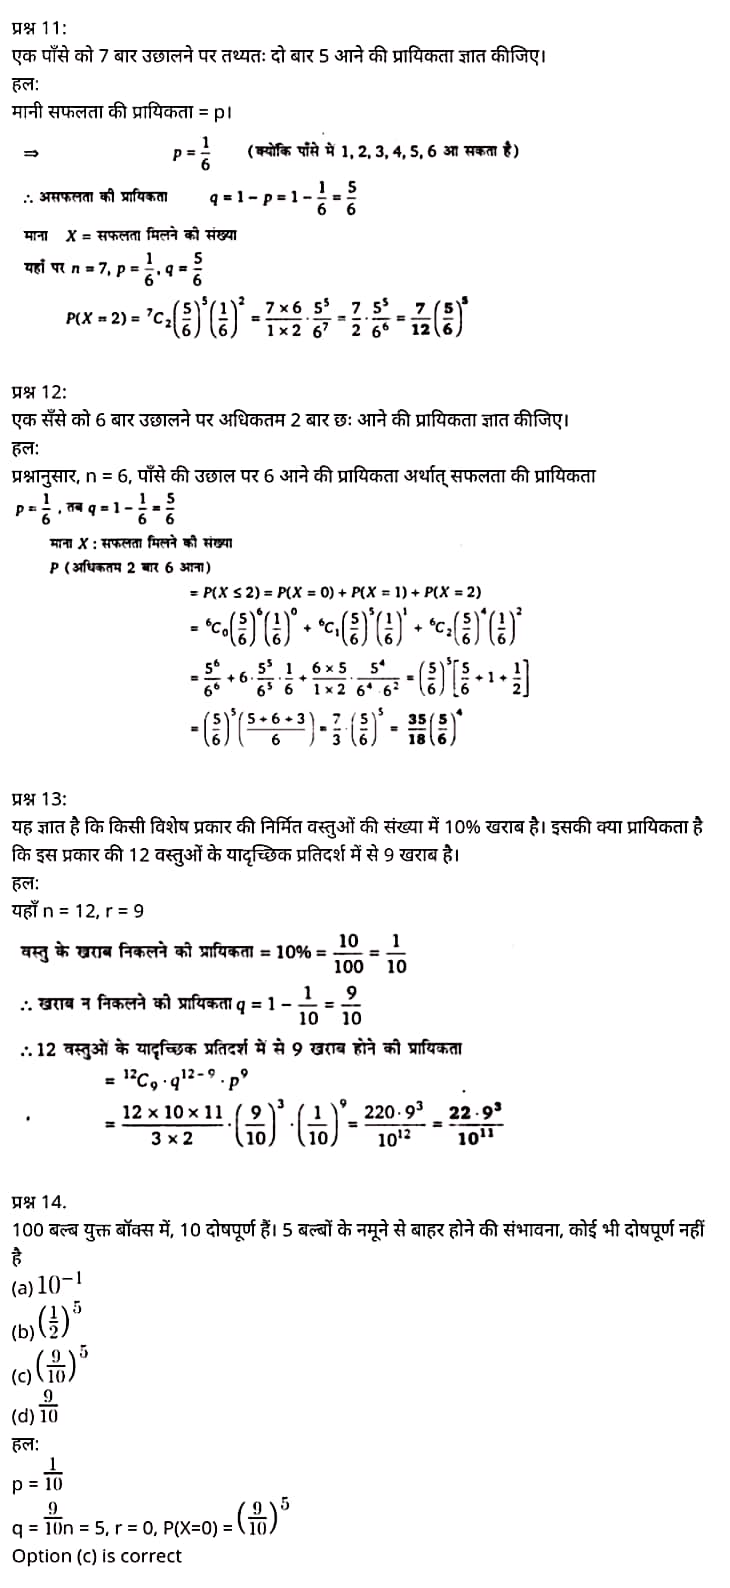 "Class 12 Maths Chapter 13", "Probability", Hindi Medium मैथ्स कक्षा 12 नोट्स pdf,  मैथ्स कक्षा 12 नोट्स 2021 NCERT,  मैथ्स कक्षा 12 PDF,  मैथ्स पुस्तक,  मैथ्स की बुक,  मैथ्स प्रश्नोत्तरी Class 12, 12 वीं मैथ्स पुस्तक RBSE,  बिहार बोर्ड 12 वीं मैथ्स नोट्स,   12th Maths book in hindi, 12th Maths notes in hindi, cbse books for class 12, cbse books in hindi, cbse ncert books, class 12 Maths notes in hindi,  class 12 hindi ncert solutions, Maths 2020, Maths 2021, Maths 2022, Maths book class 12, Maths book in hindi, Maths class 12 in hindi, Maths notes for class 12 up board in hindi, ncert all books, ncert app in hindi, ncert book solution, ncert books class 10, ncert books class 12, ncert books for class 7, ncert books for upsc in hindi, ncert books in hindi class 10, ncert books in hindi for class 12 Maths, ncert books in hindi for class 6, ncert books in hindi pdf, ncert class 12 hindi book, ncert english book, ncert Maths book in hindi, ncert Maths books in hindi pdf, ncert Maths class 12, ncert in hindi,  old ncert books in hindi, online ncert books in hindi,  up board 12th, up board 12th syllabus, up board class 10 hindi book, up board class 12 books, up board class 12 new syllabus, up Board Maths 2020, up Board Maths 2021, up Board Maths 2022, up Board Maths 2023, up board intermediate Maths syllabus, up board intermediate syllabus 2021, Up board Master 2021, up board model paper 2021, up board model paper all subject, up board new syllabus of class 12th Maths, up board paper 2021, Up board syllabus 2021, UP board syllabus 2022,  12 वीं मैथ्स पुस्तक हिंदी में, 12 वीं मैथ्स नोट्स हिंदी में, कक्षा 12 के लिए सीबीएससी पुस्तकें, हिंदी में सीबीएससी पुस्तकें, सीबीएससी  पुस्तकें, कक्षा 12 मैथ्स नोट्स हिंदी में, कक्षा 12 हिंदी एनसीईआरटी समाधान, मैथ्स 2020,